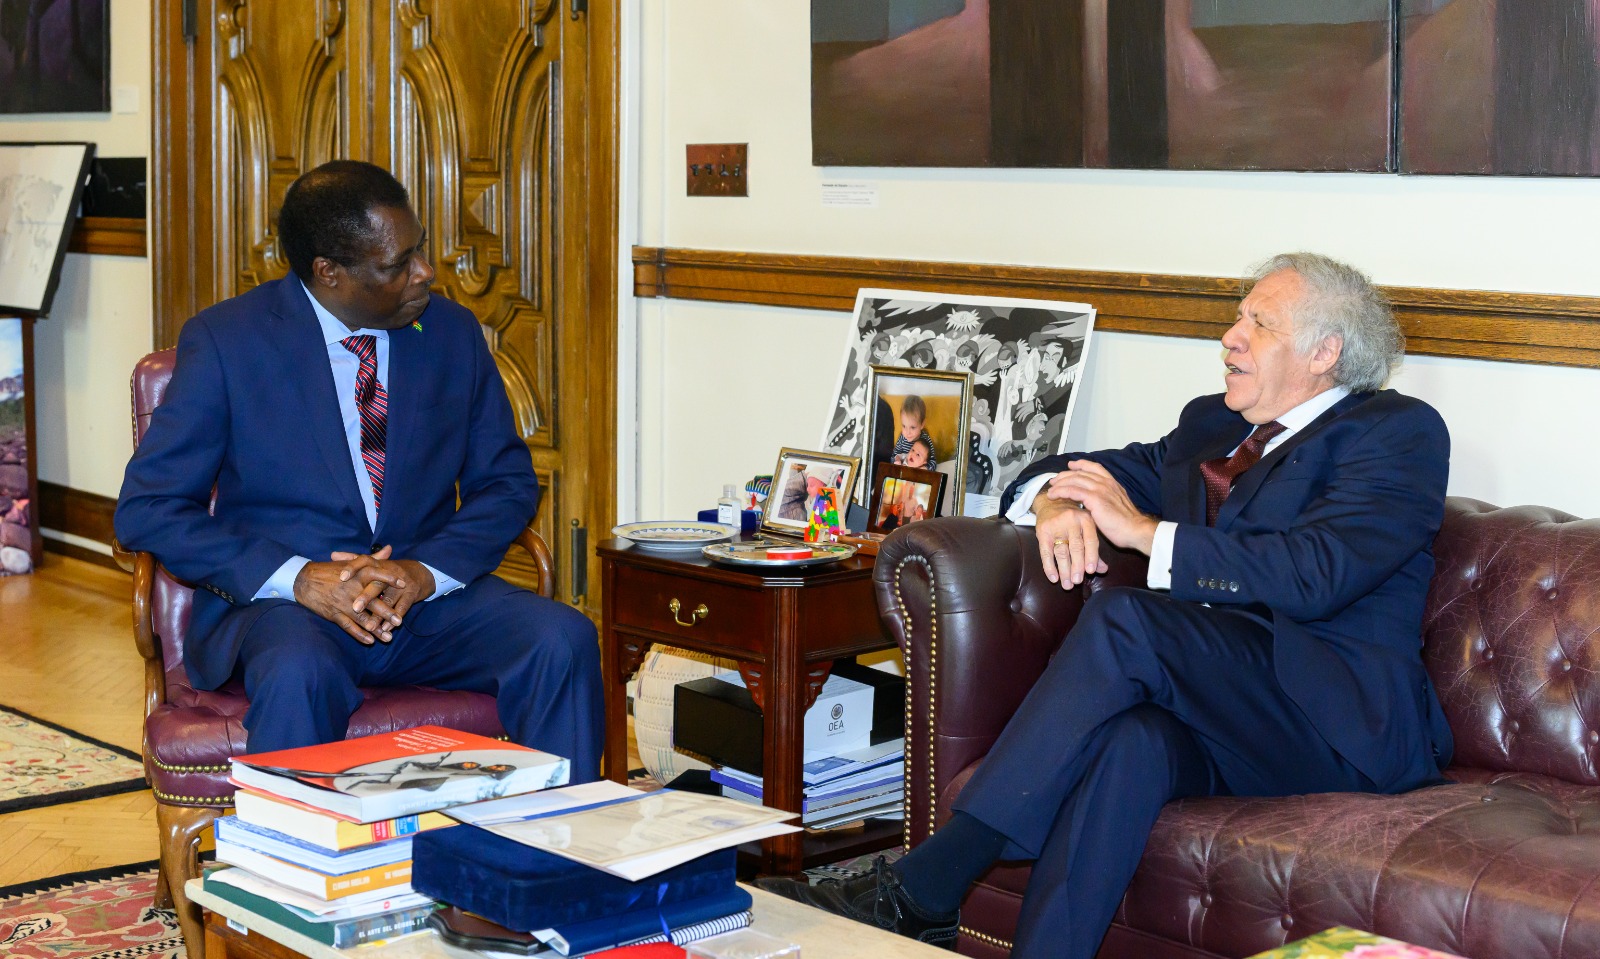 Coopération entre le Togo et l'OEA, notamment dans les secteurs économiques clés du Togo : l'agriculture, les mines et le commerce régional.